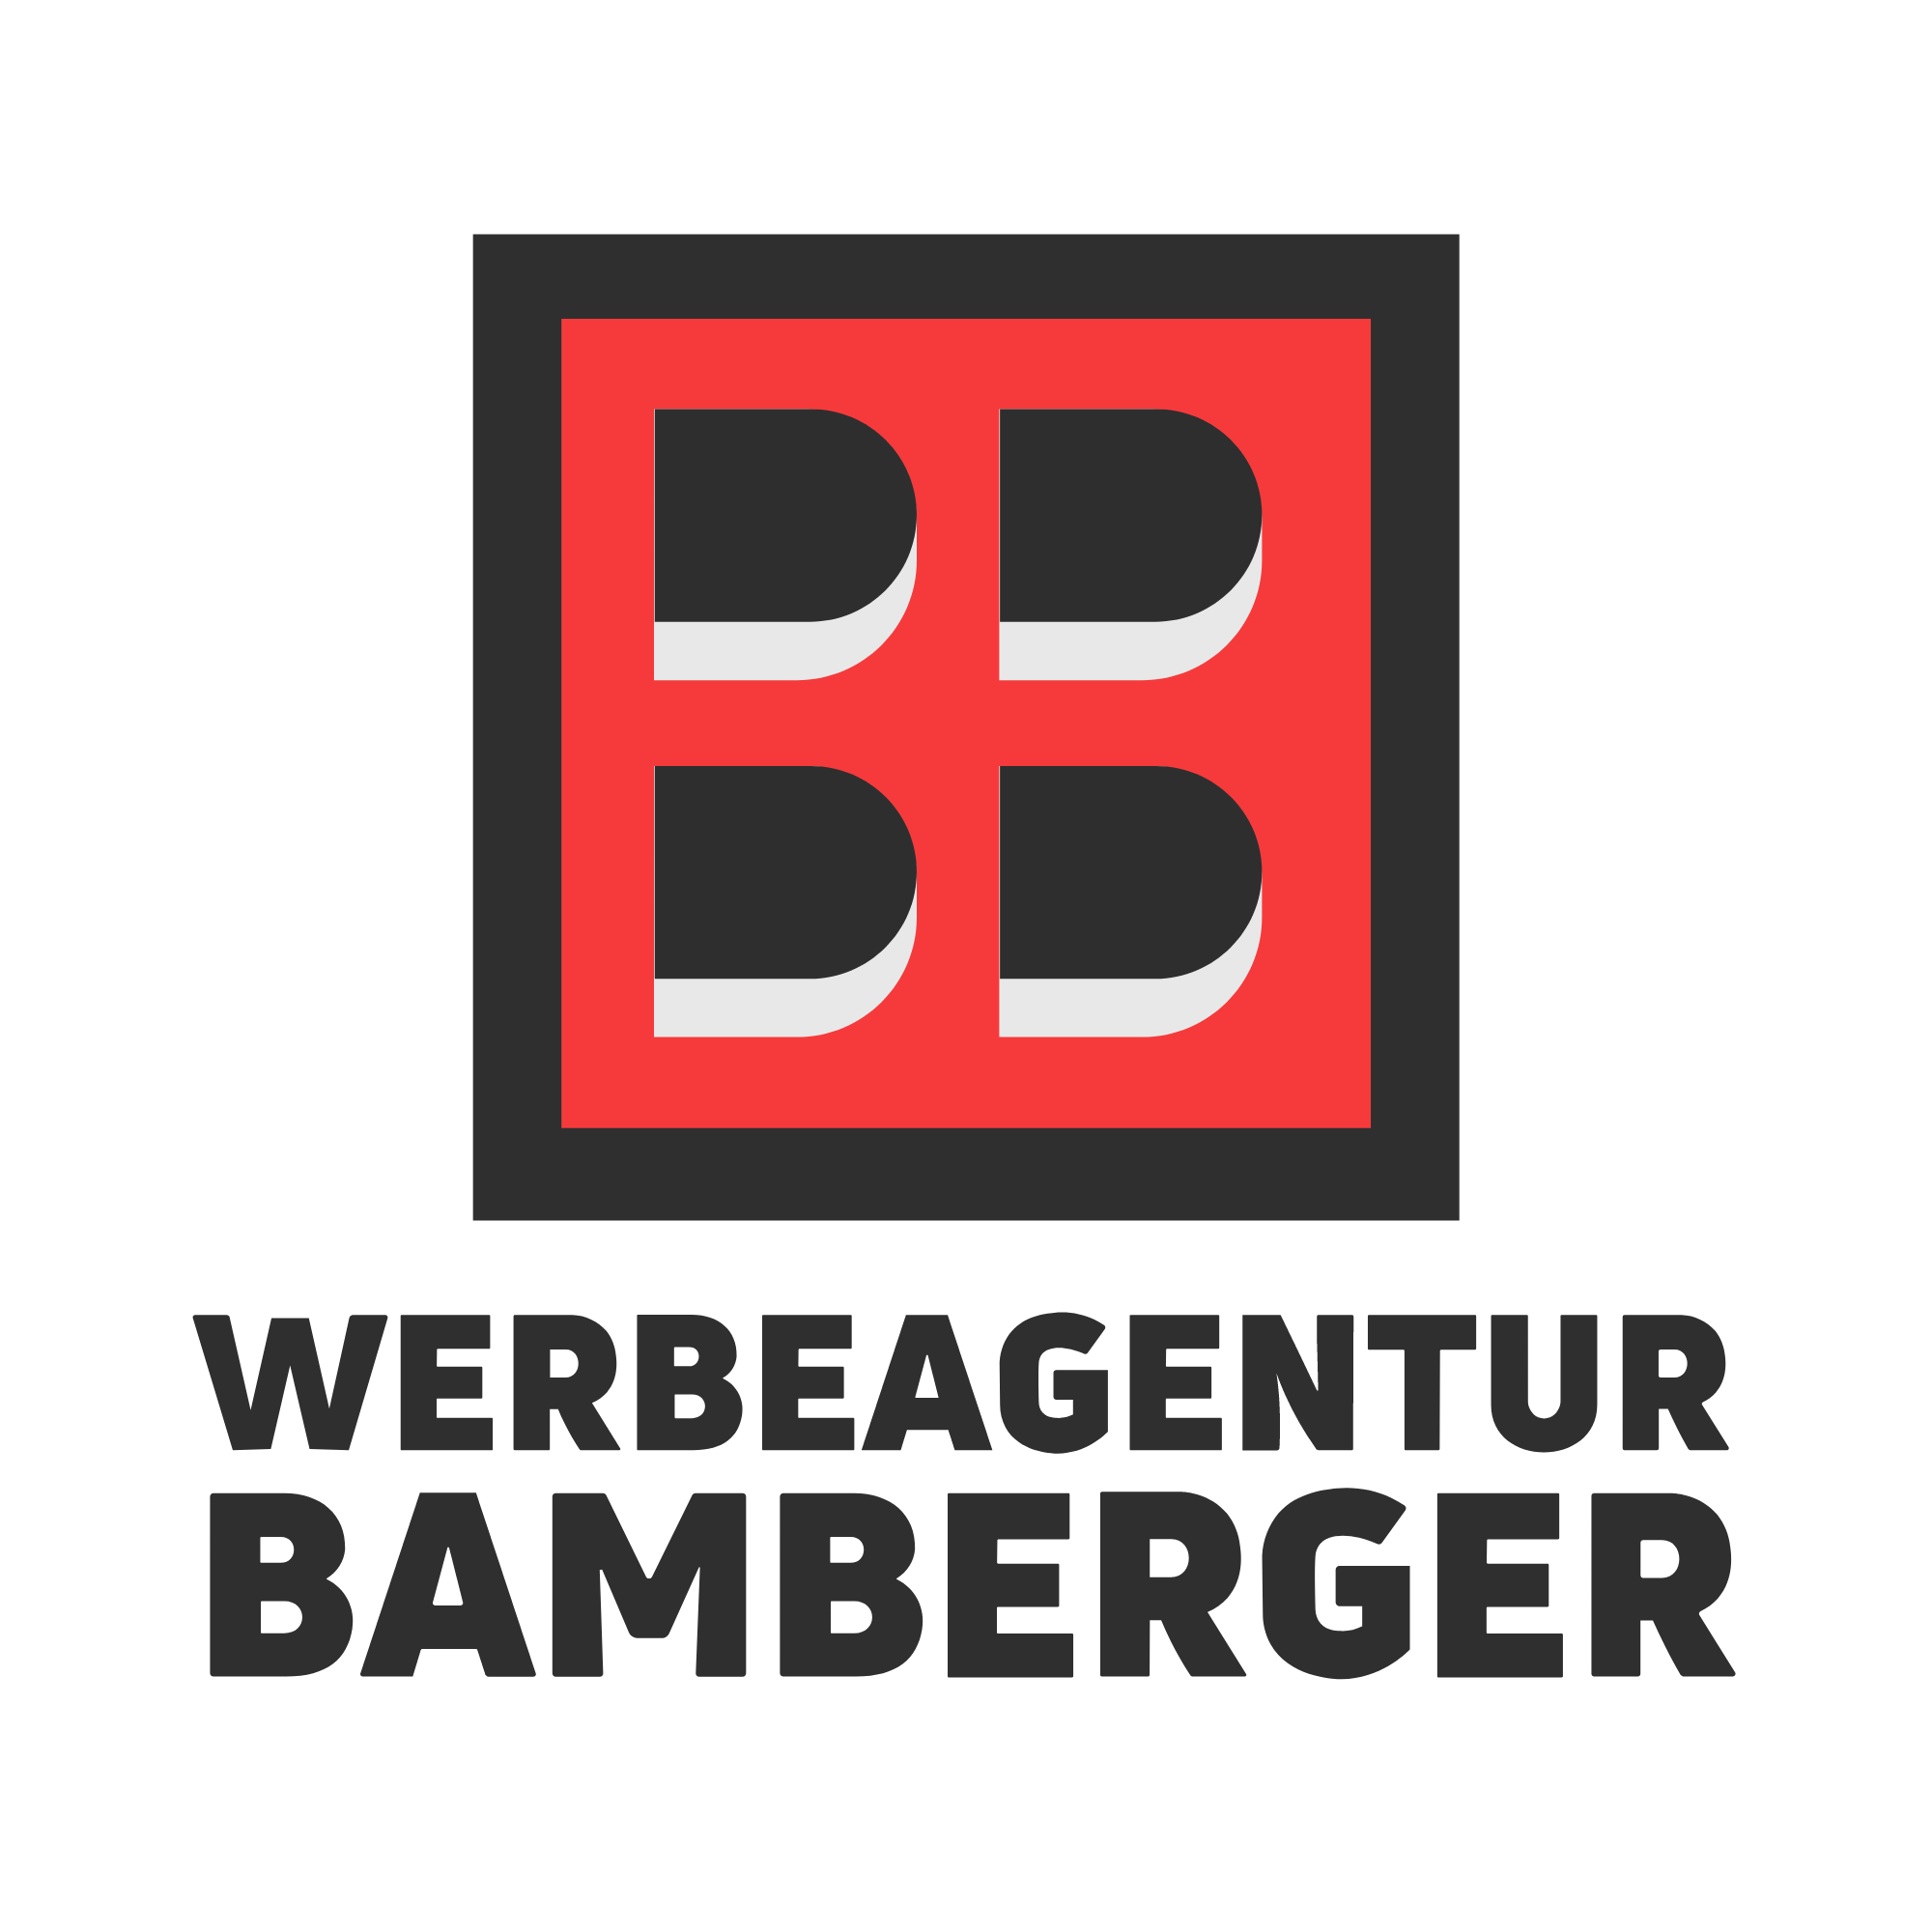 Logo Werbeagentur Bamberger
Werbeagentur Nürnberg